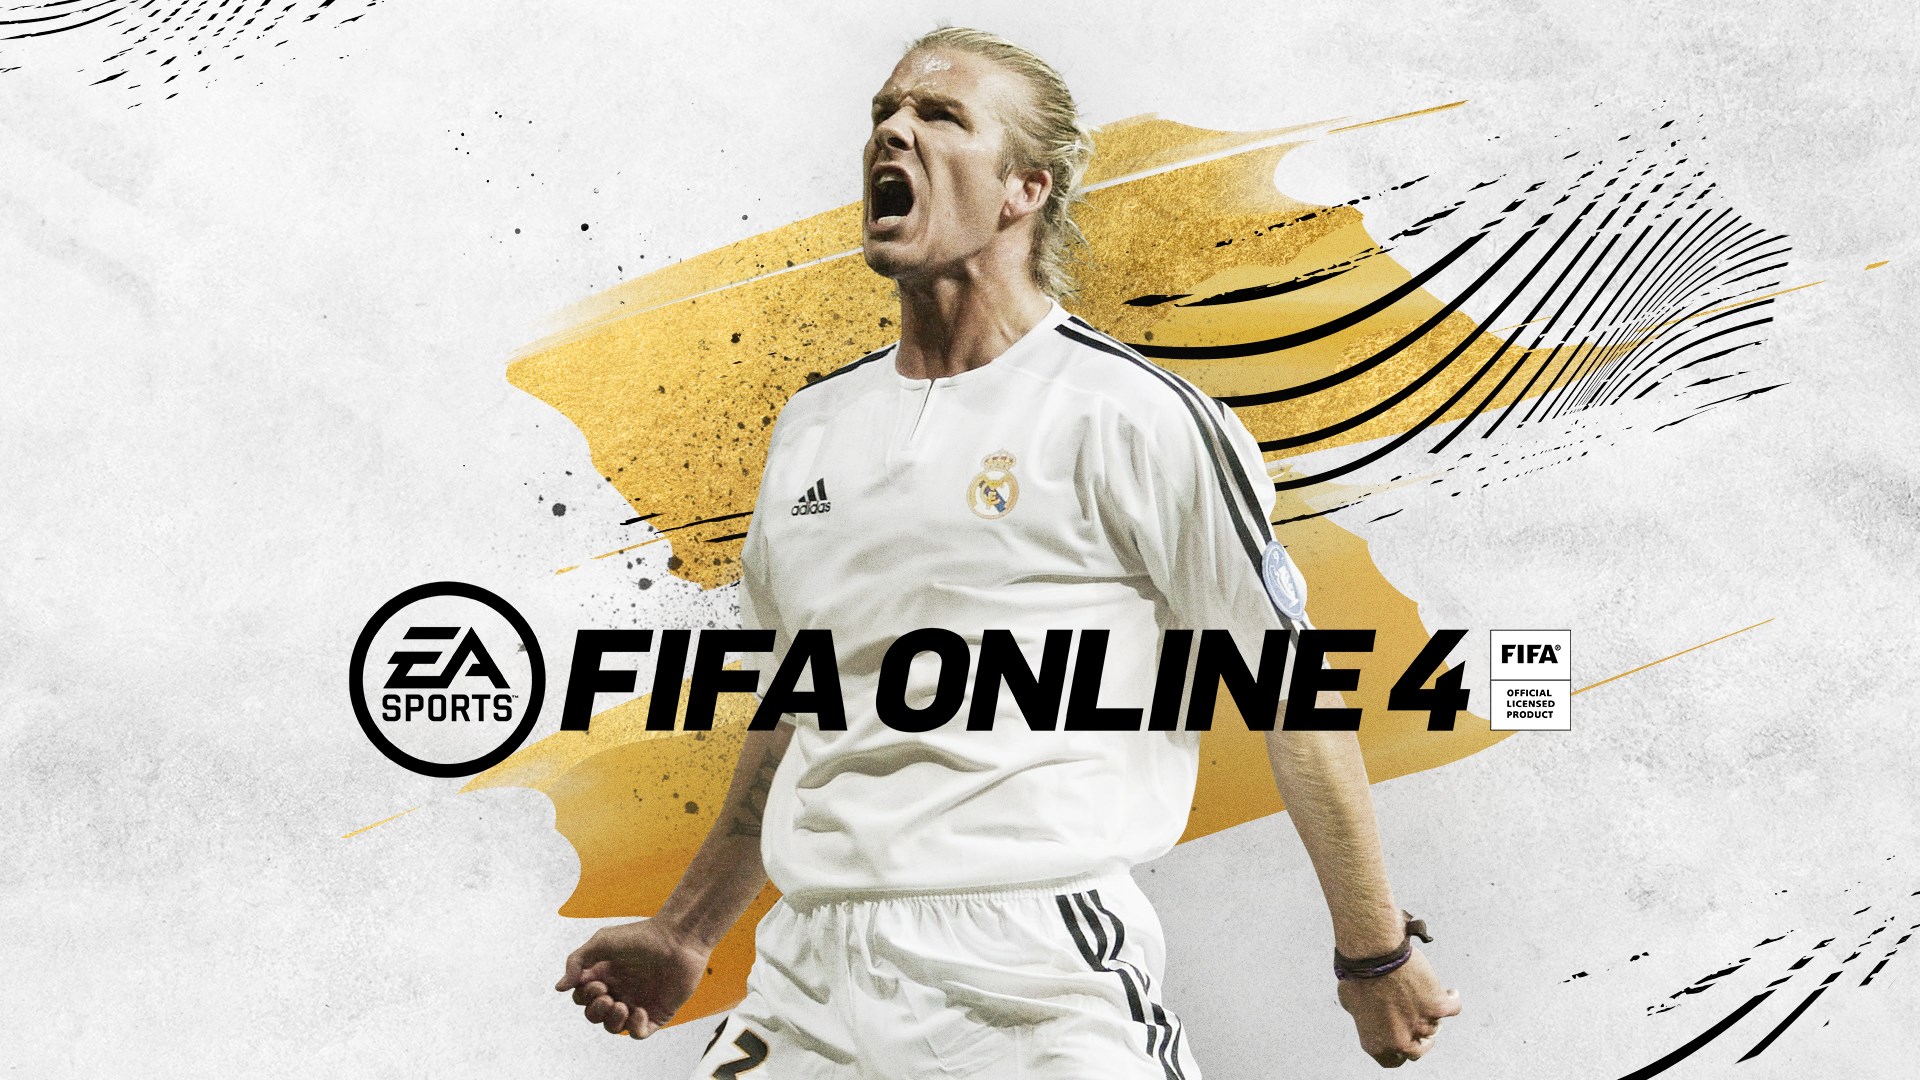 Ücretsiz FIFA oyunu FIFA Online 4, Türkiye'ye geliyor